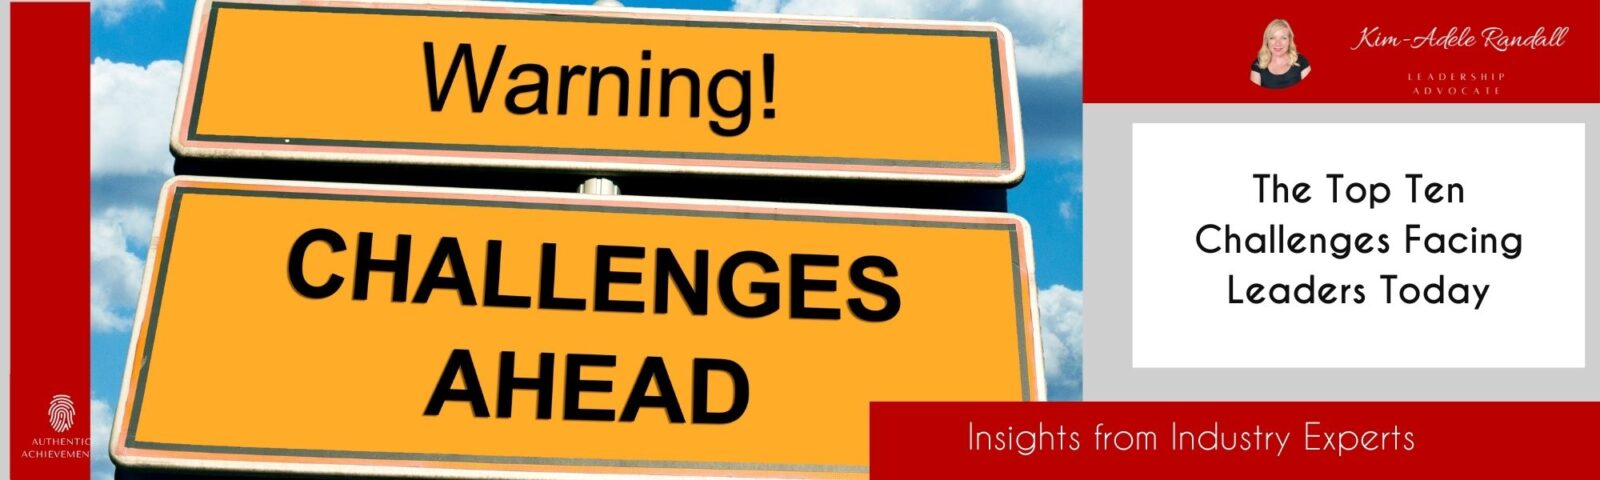 The Top Ten Challenges Facing Leaders Today